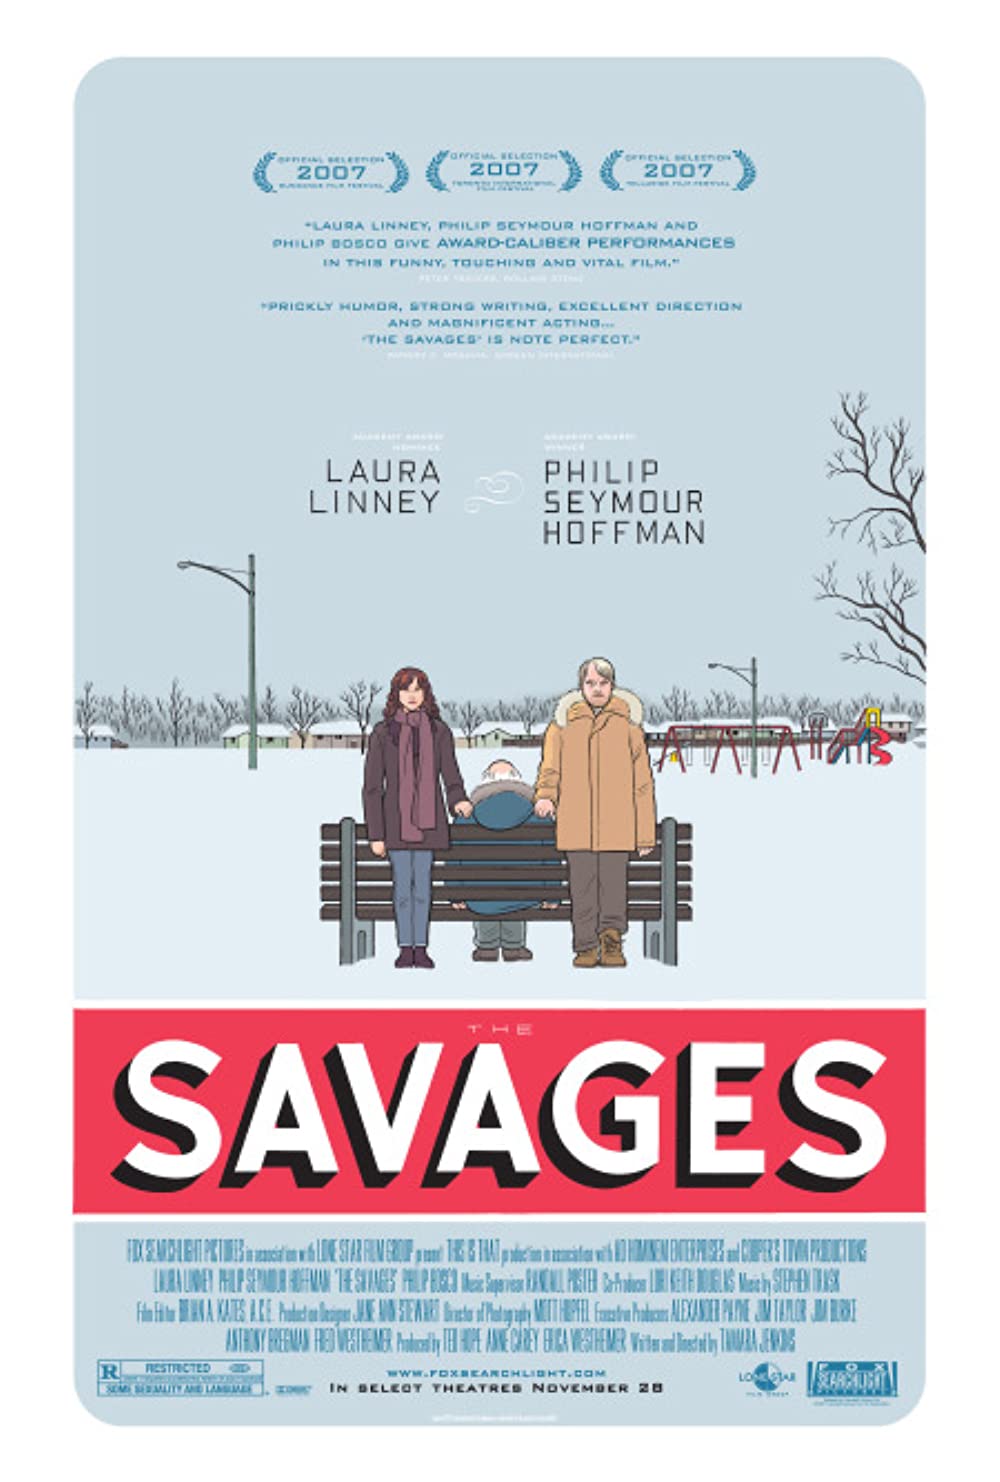 Filmbeschreibung zu The Savages